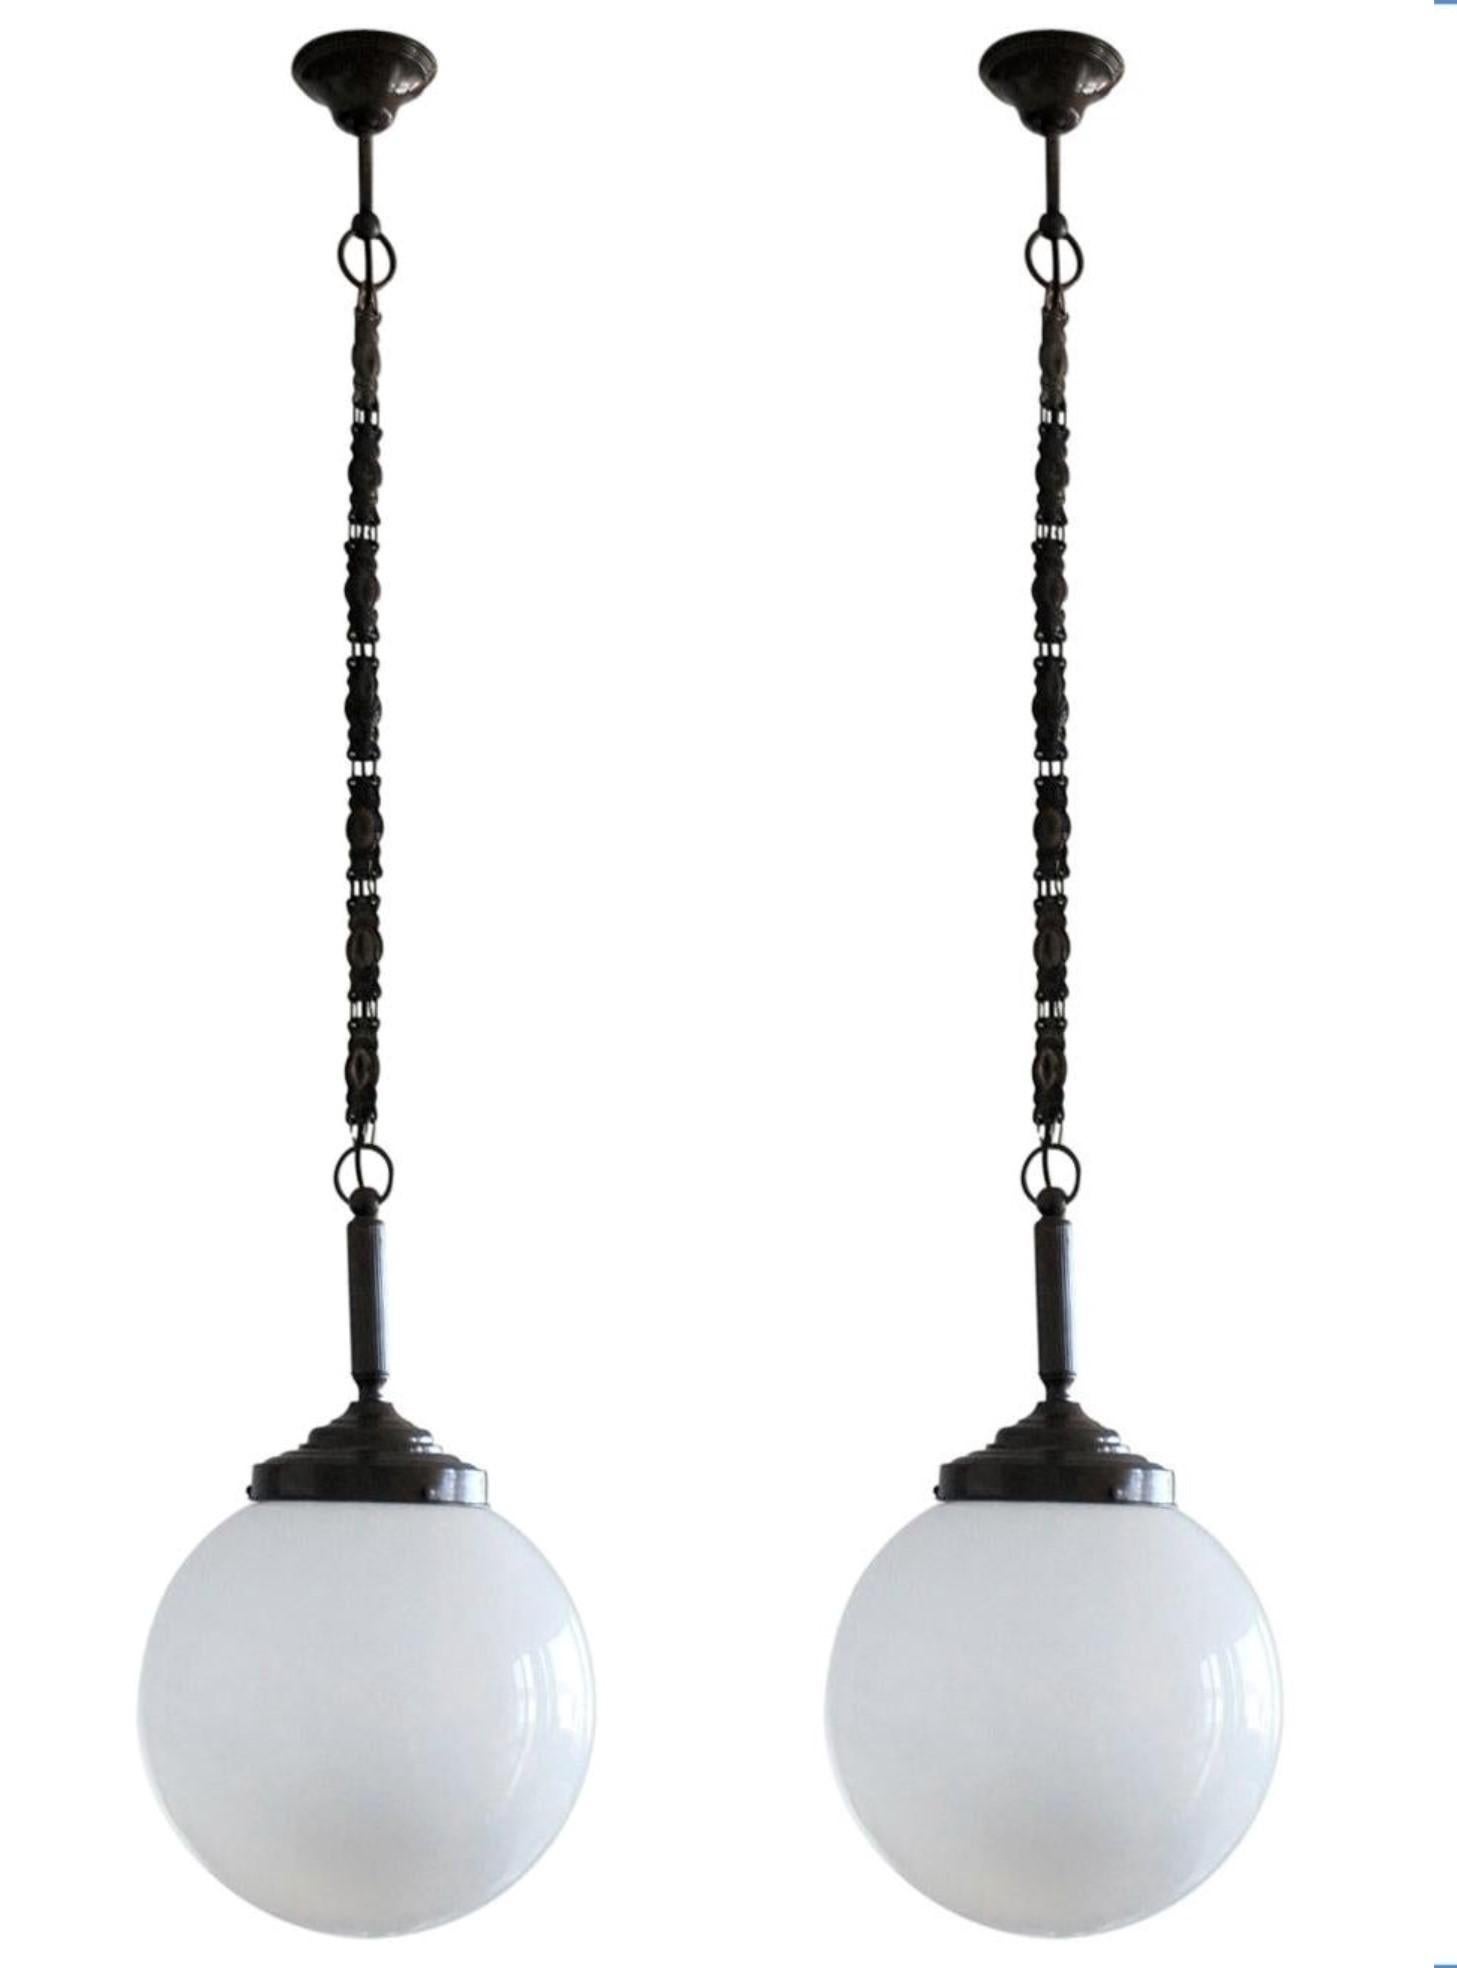 Ein Satz von drei mundgeblasenen Opalglas-Kugel-Theater-Anhängern mit brünierten Messingbeschlägen, Kette und Baldachin, Italien, 1930-1939. Mit einer einzigen Edison E27-Fassung für eine große Schraubsockel-Glühbirne bis zu 100W. Es können auch